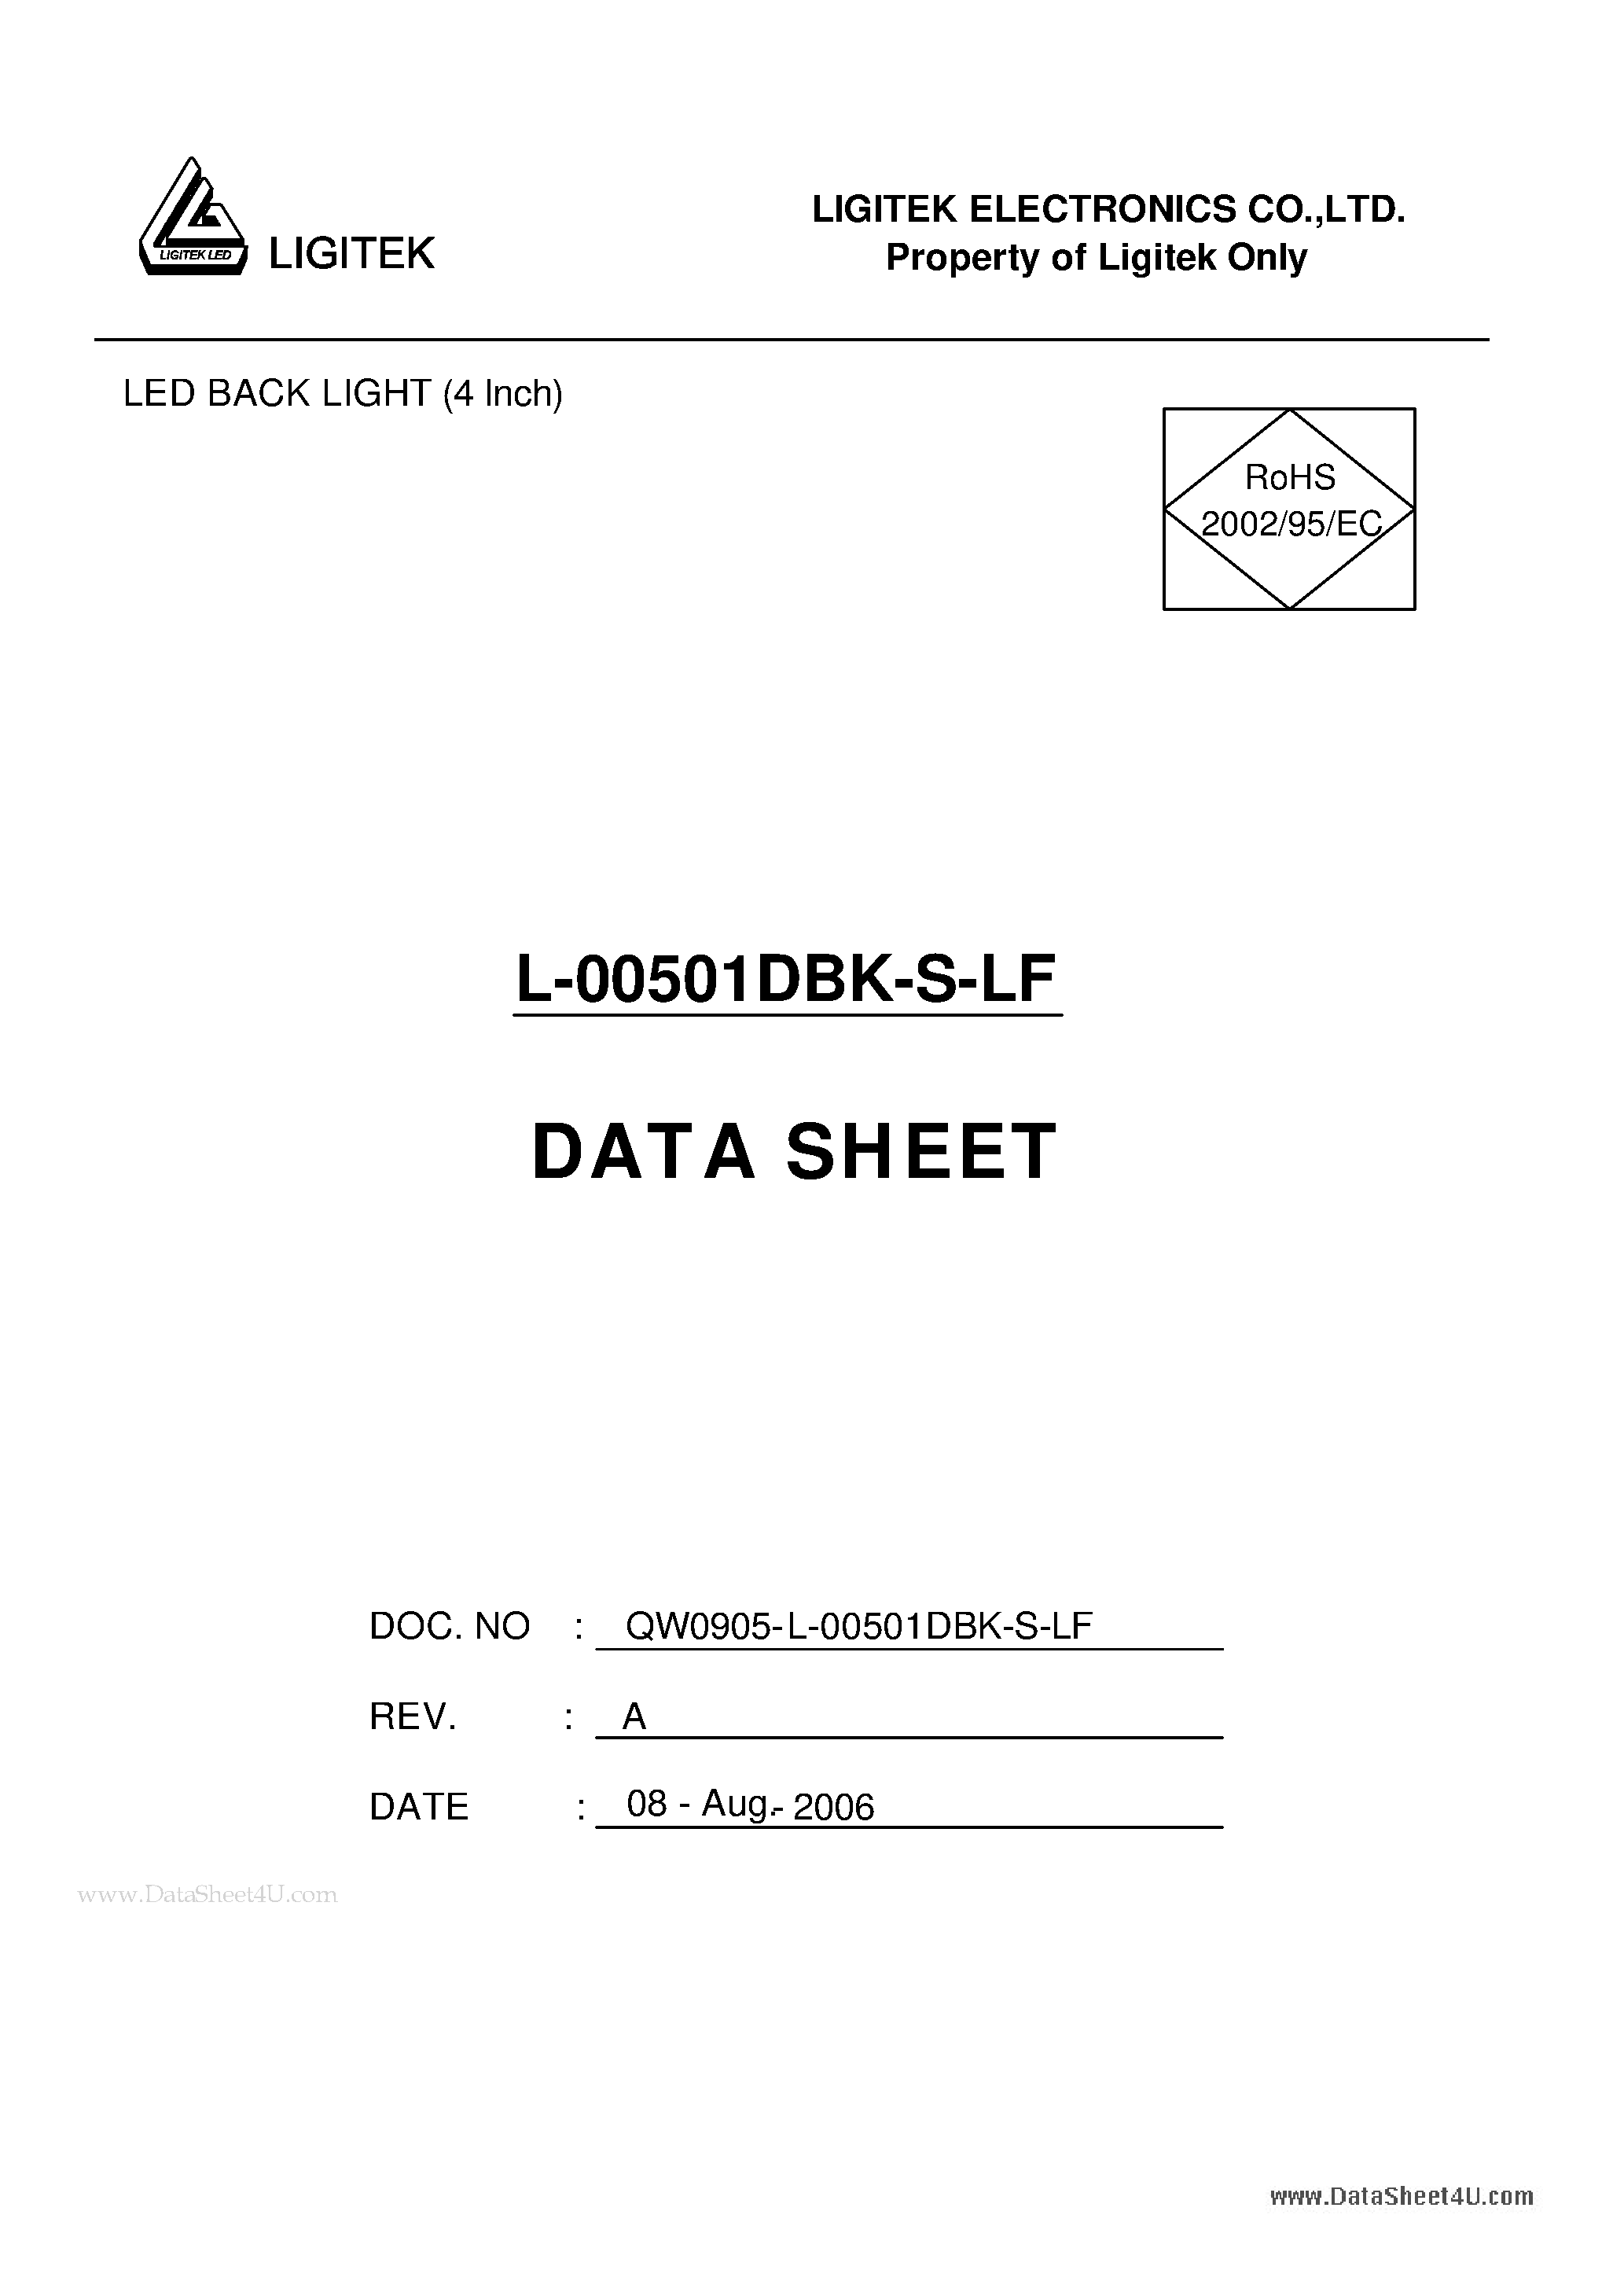 Даташит L-00501DBK-S-LF - LED BACK LIGHT (4 Inch) страница 1